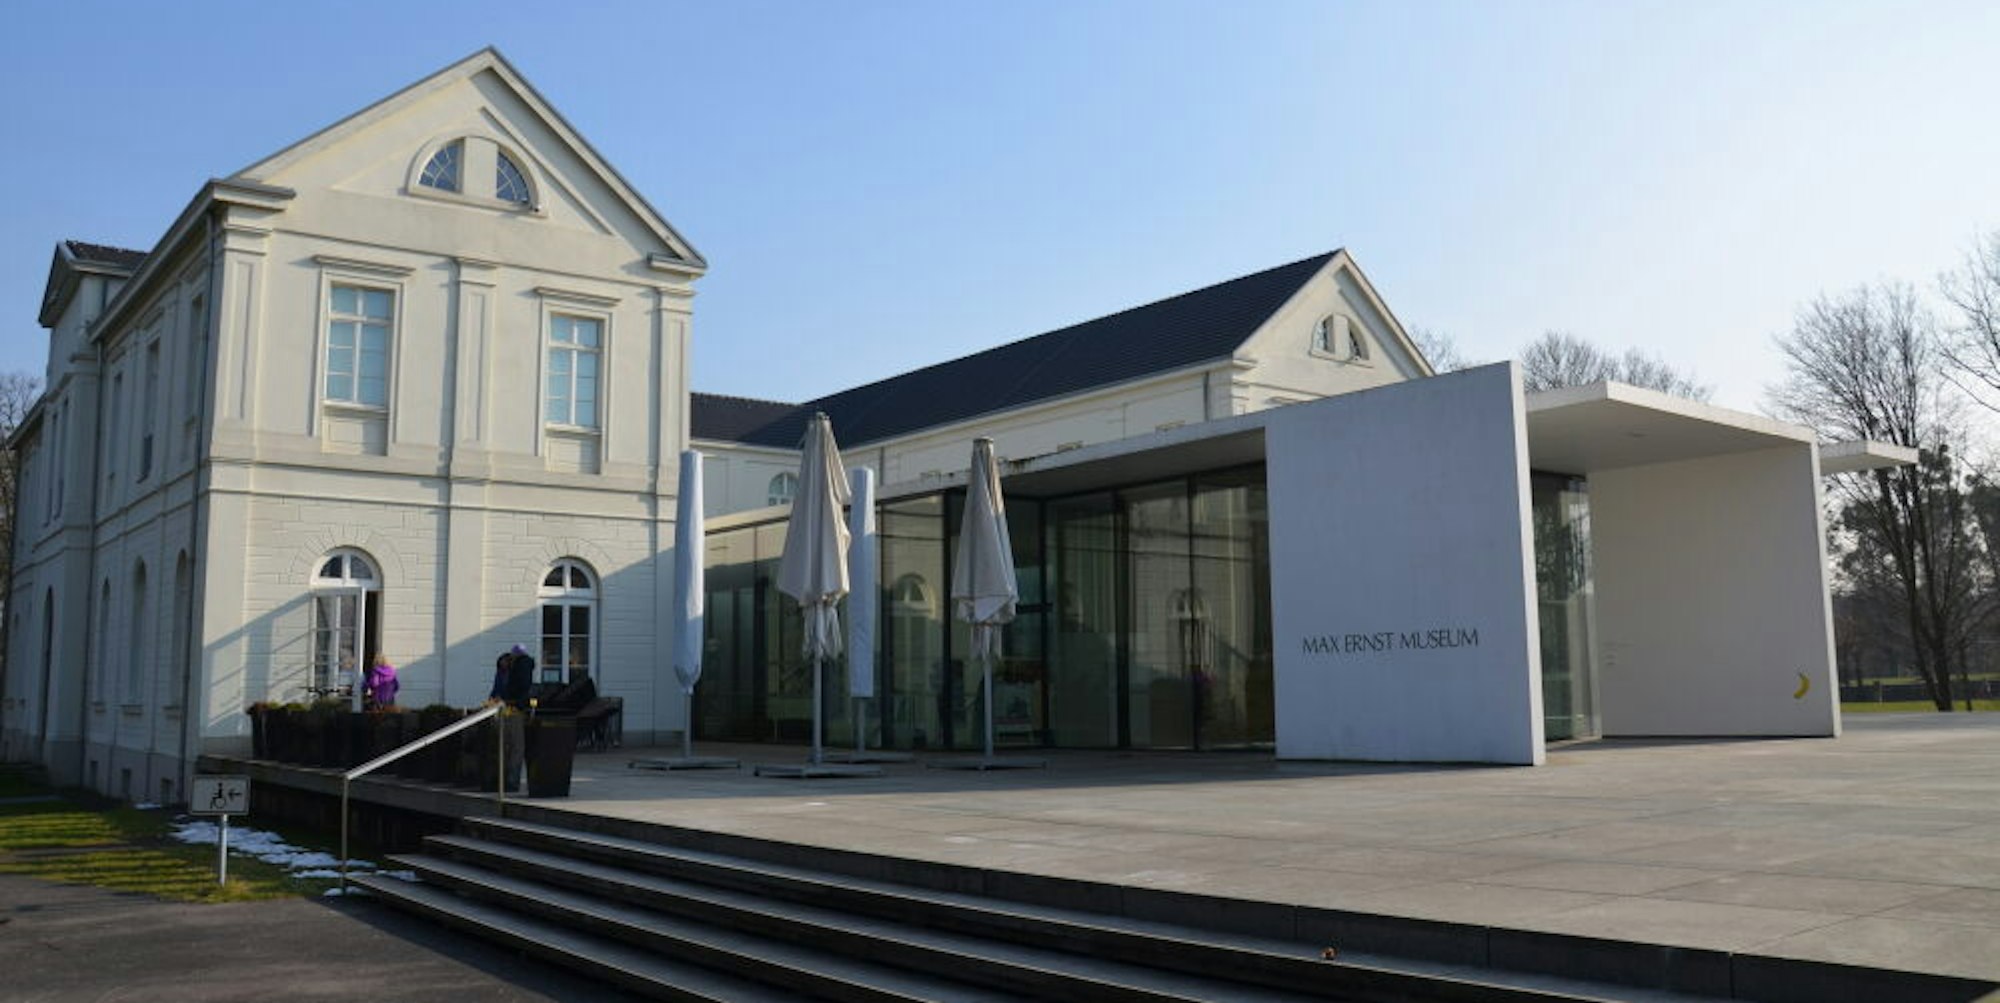 Derzeit ist das Brühler Max-Ernst-Museum für Besucher geschlossen. Doch die Verantwortlichen planen eifrig Veranstaltungen und Ausstellungen für die Zeit nach dem Lockdown.